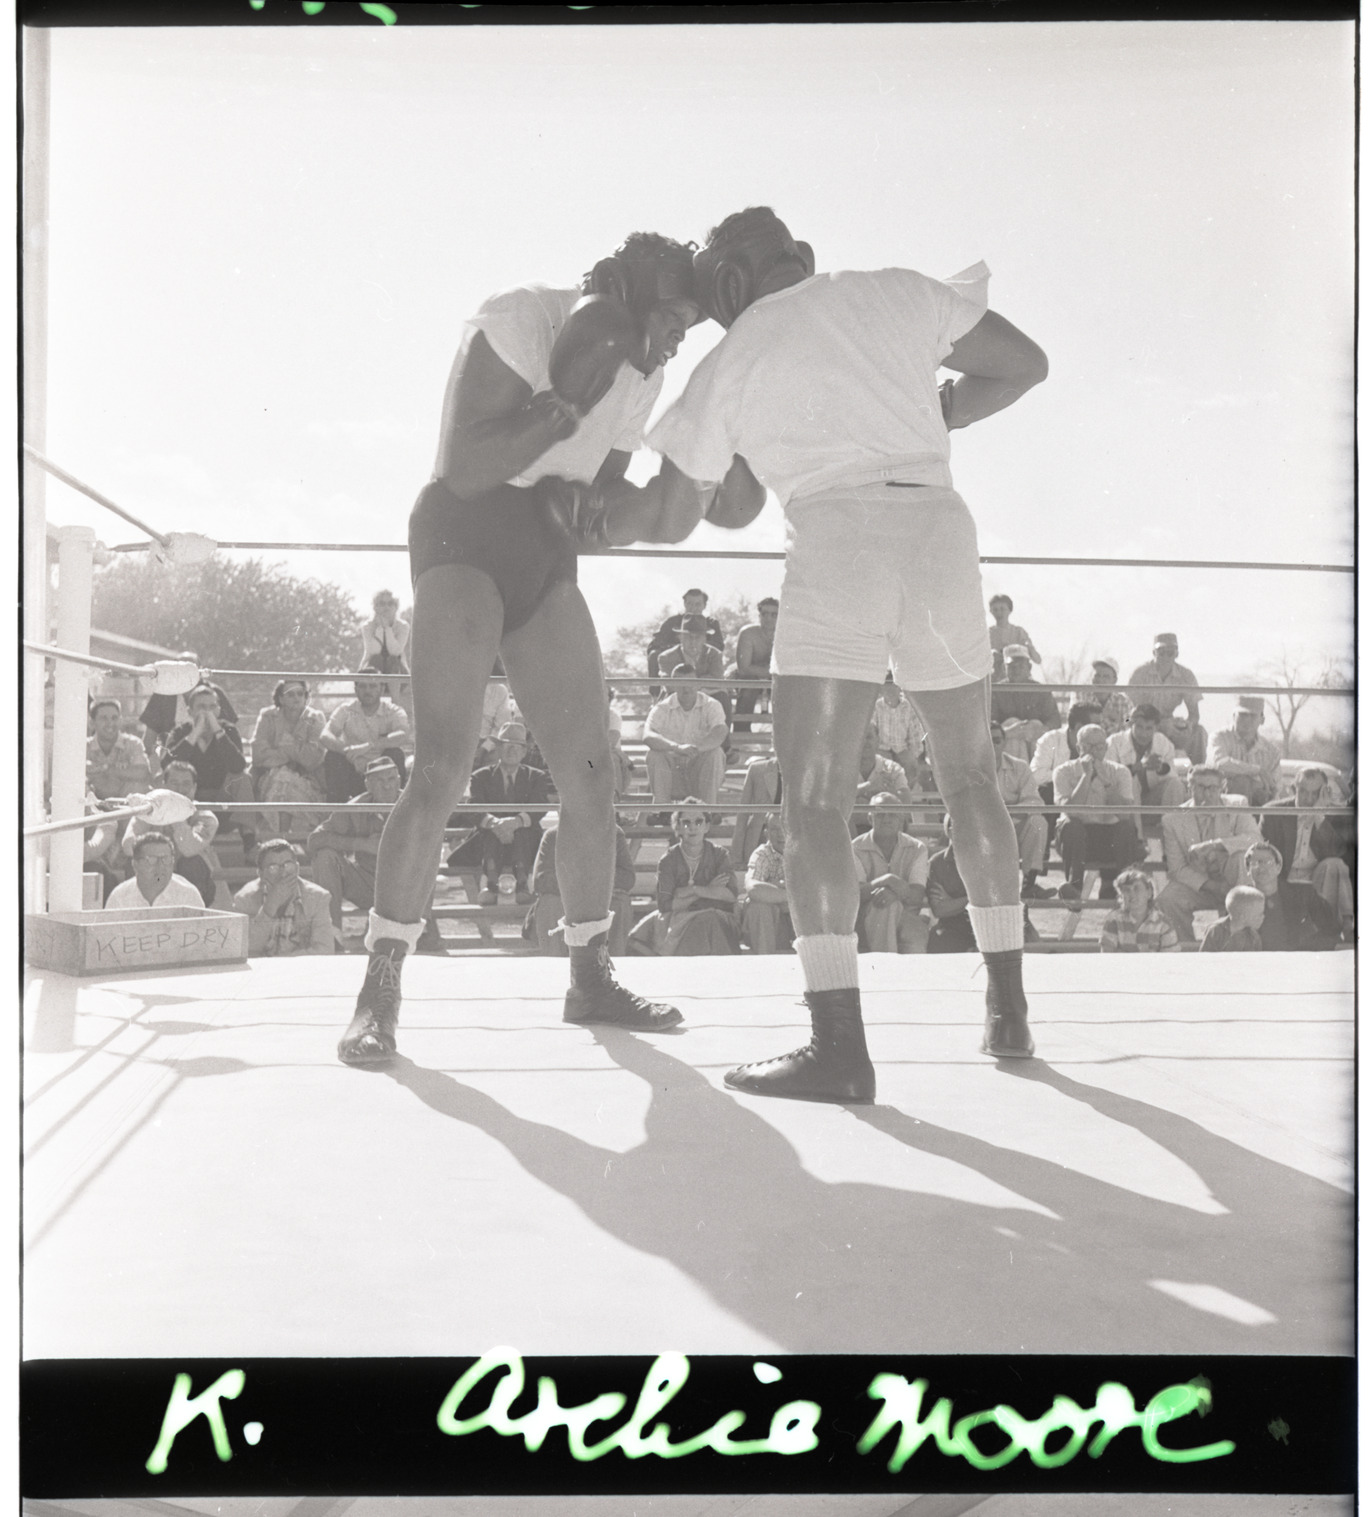 Boxing match, Image 06